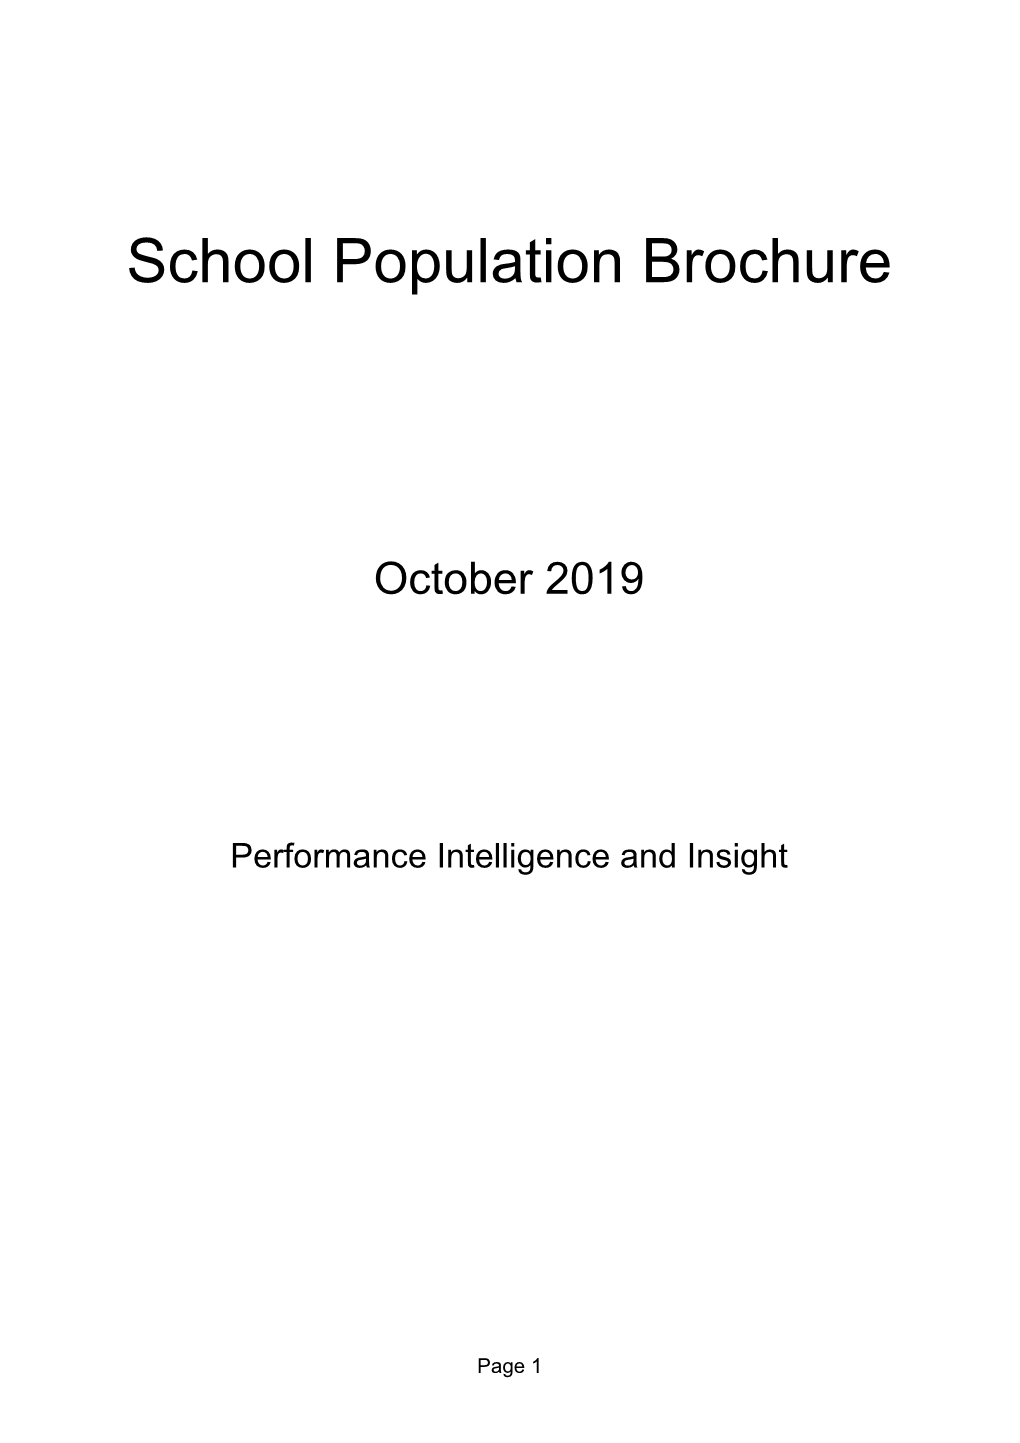 School Population Brochure October 2019